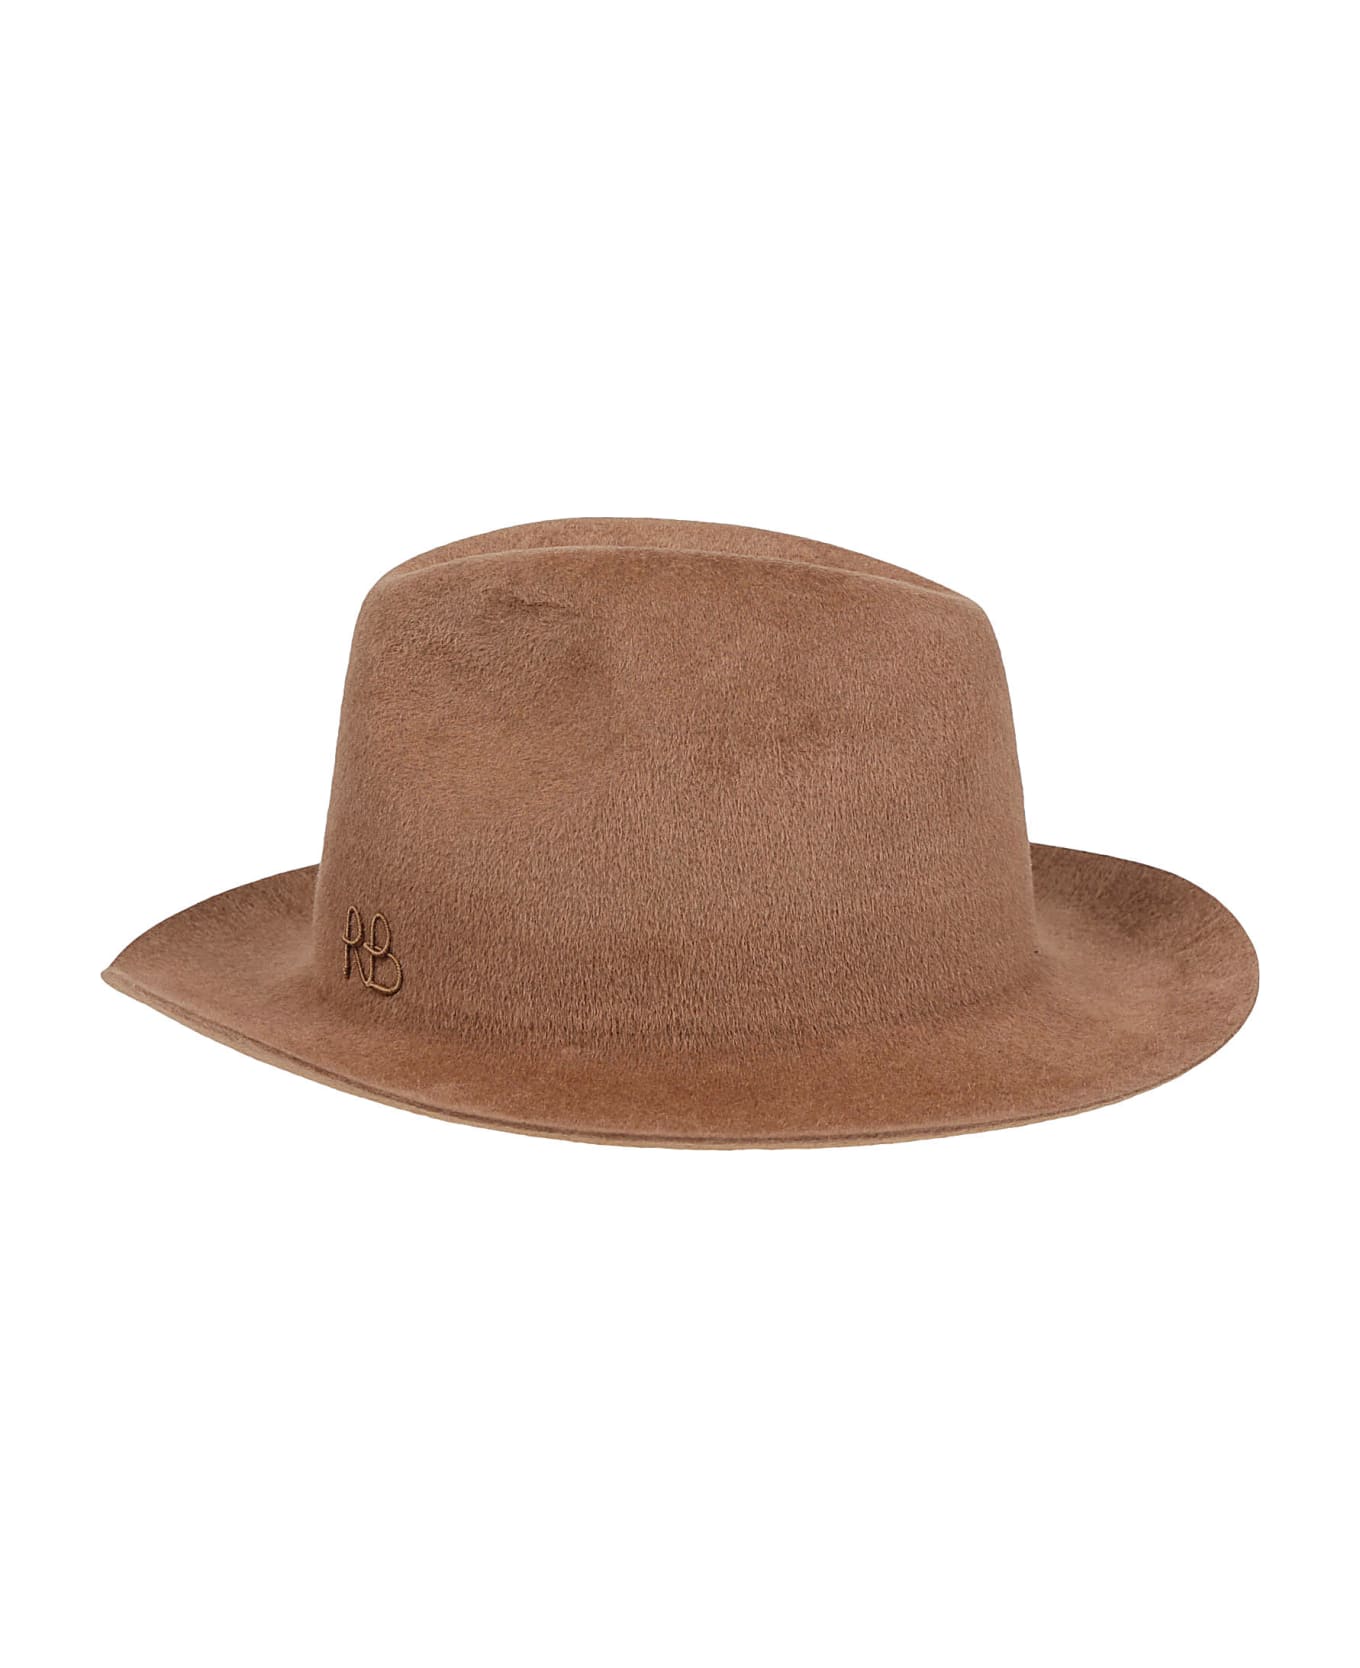 Ruslan Baginskiy Fedora Hat - Brown 帽子